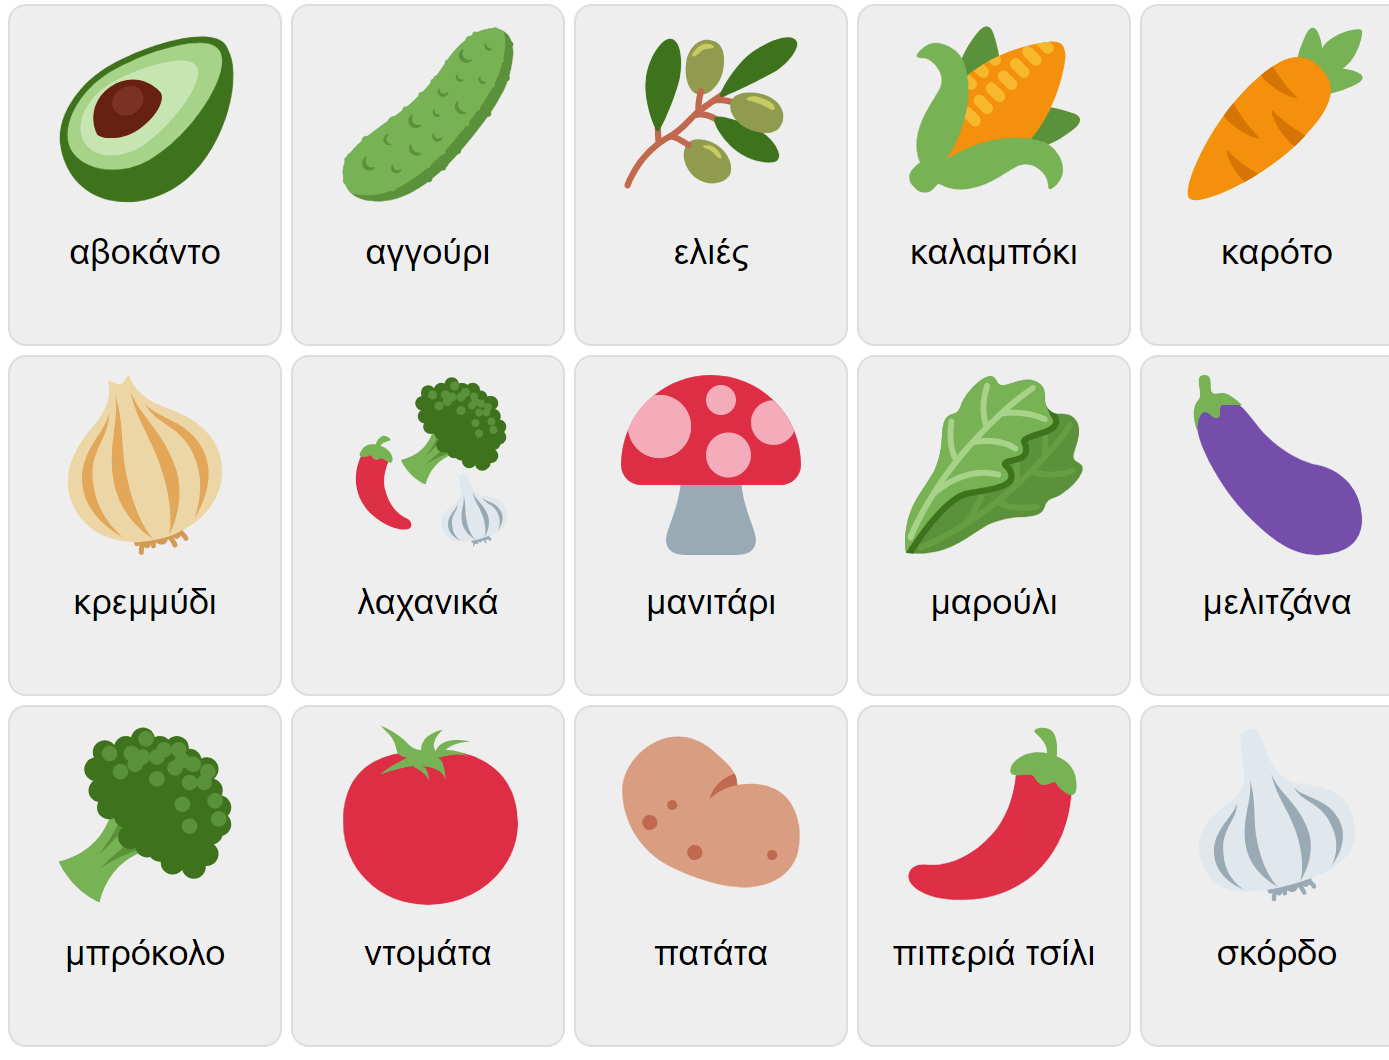 Grönsaker på grekiska